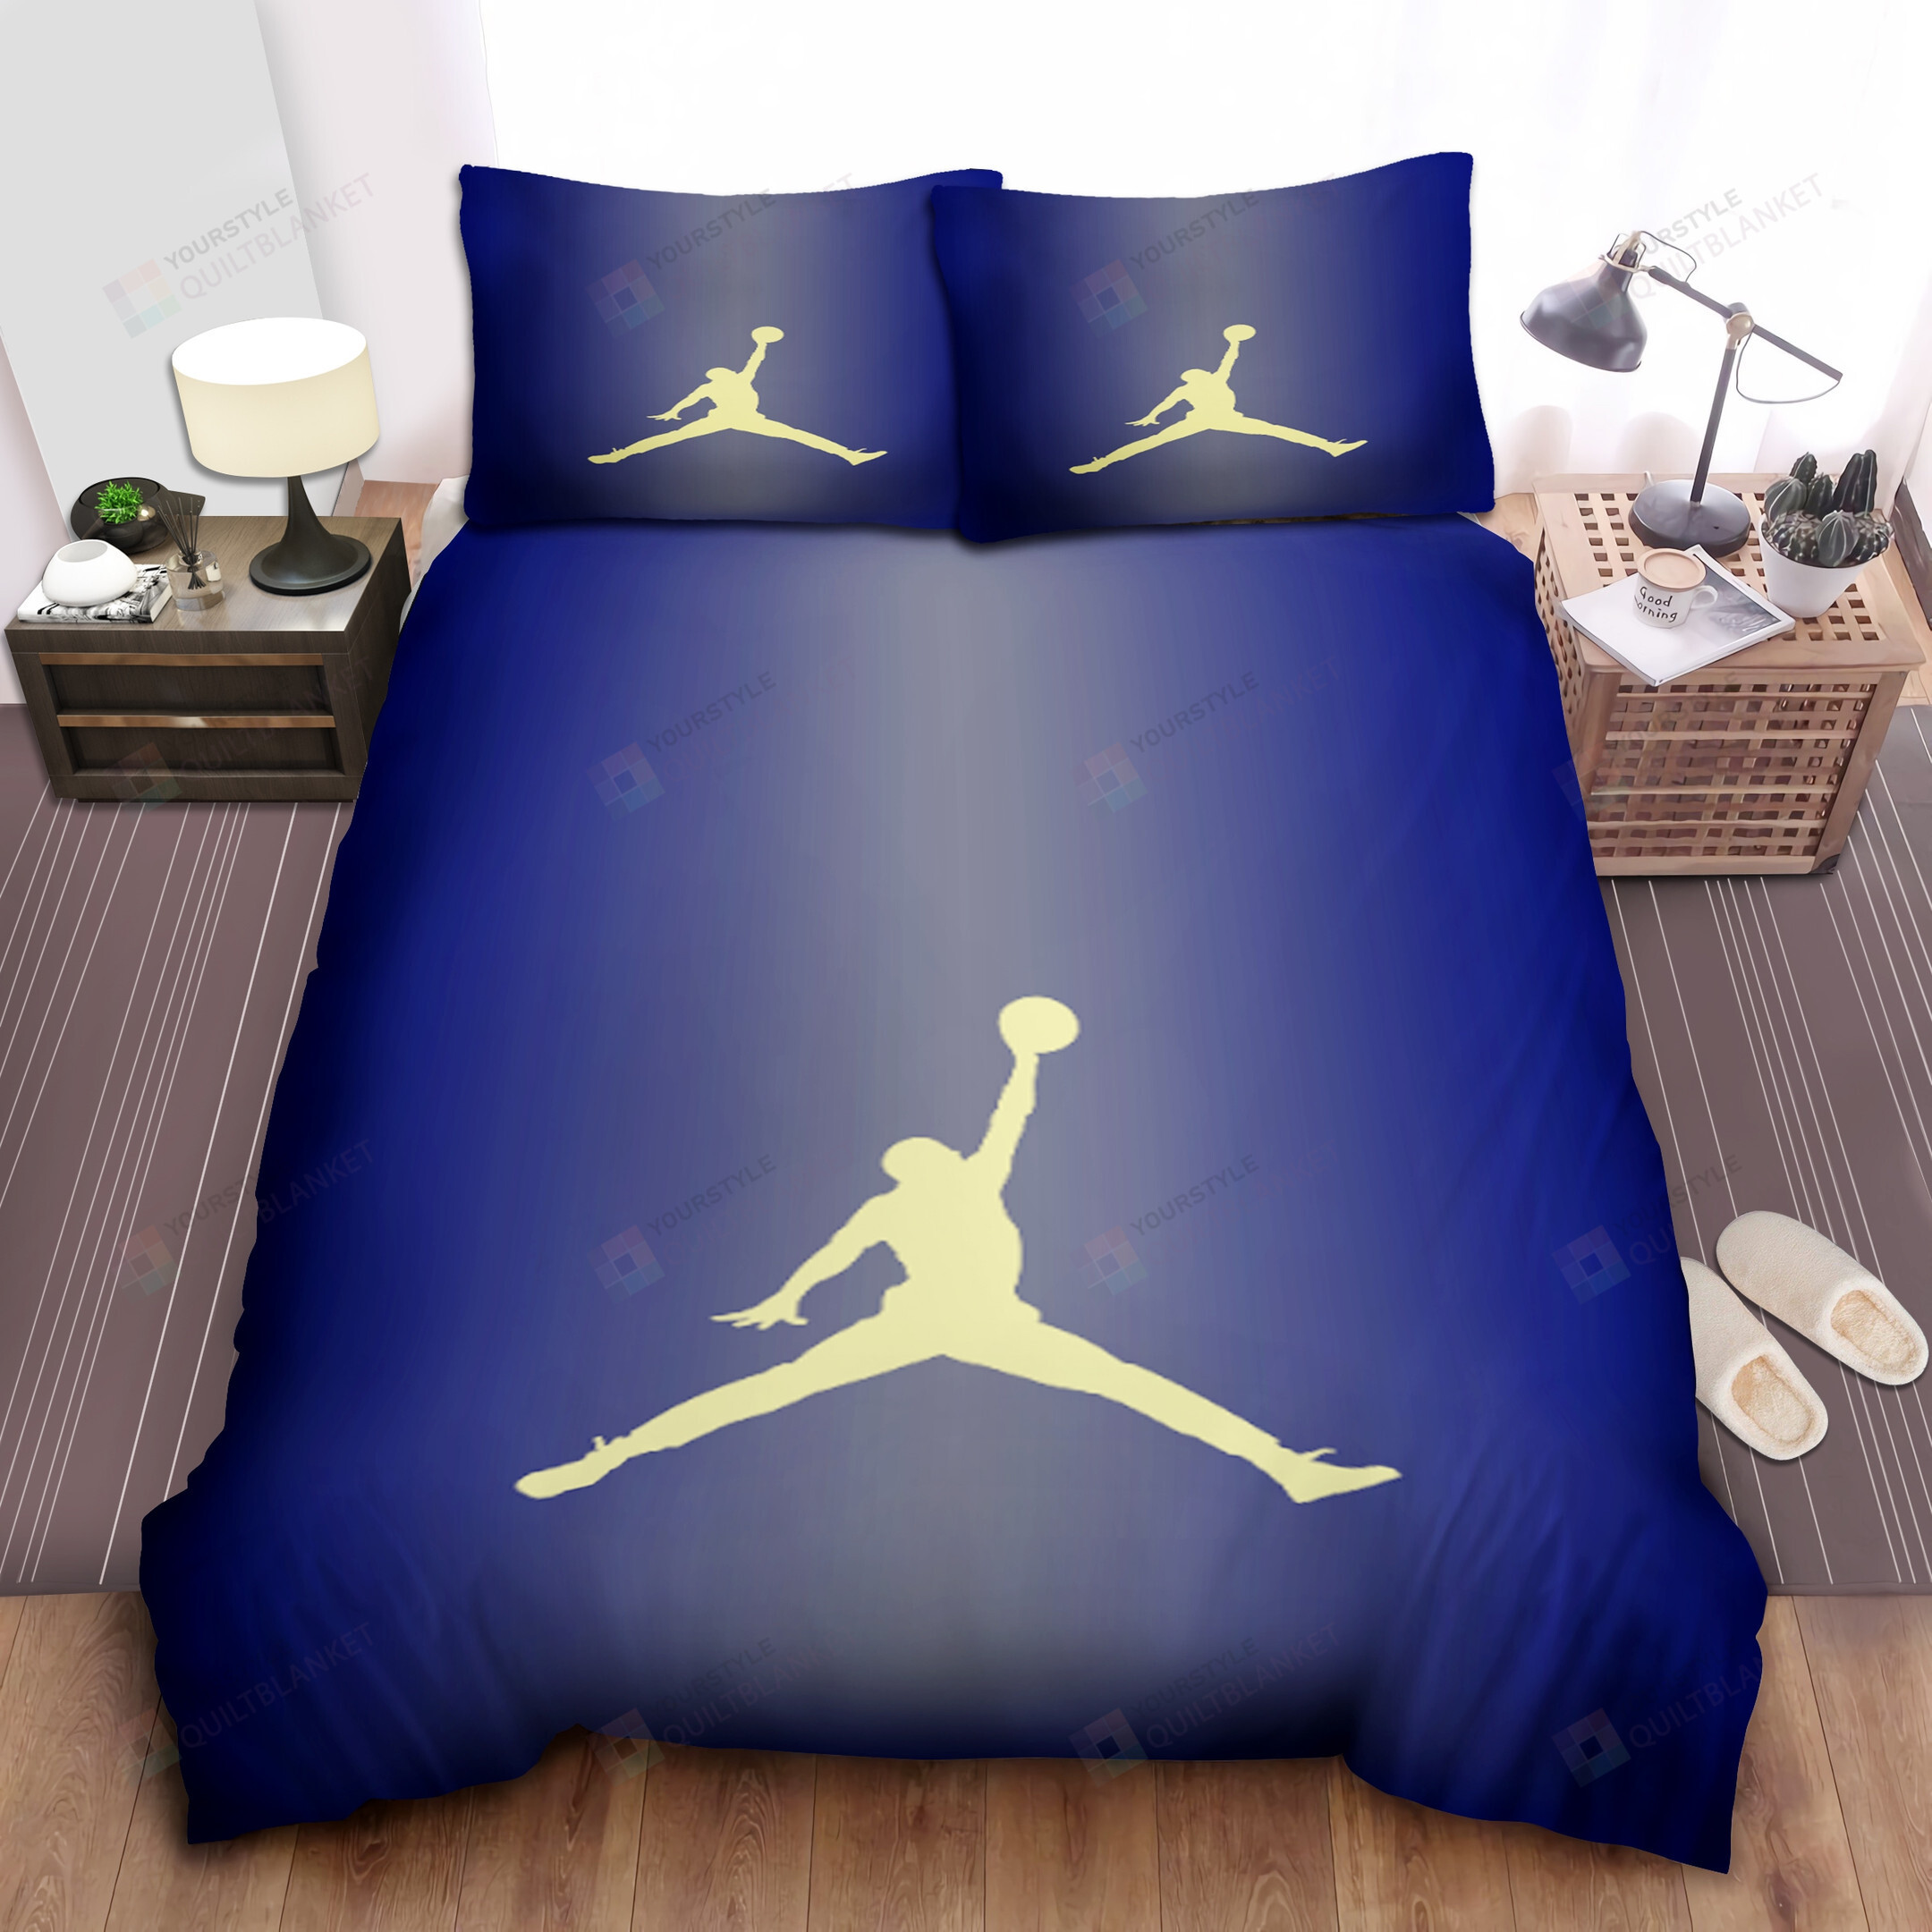 Basketball Player Logo Bedding Set For Fans (Duvet Cover & Pillow Cases)